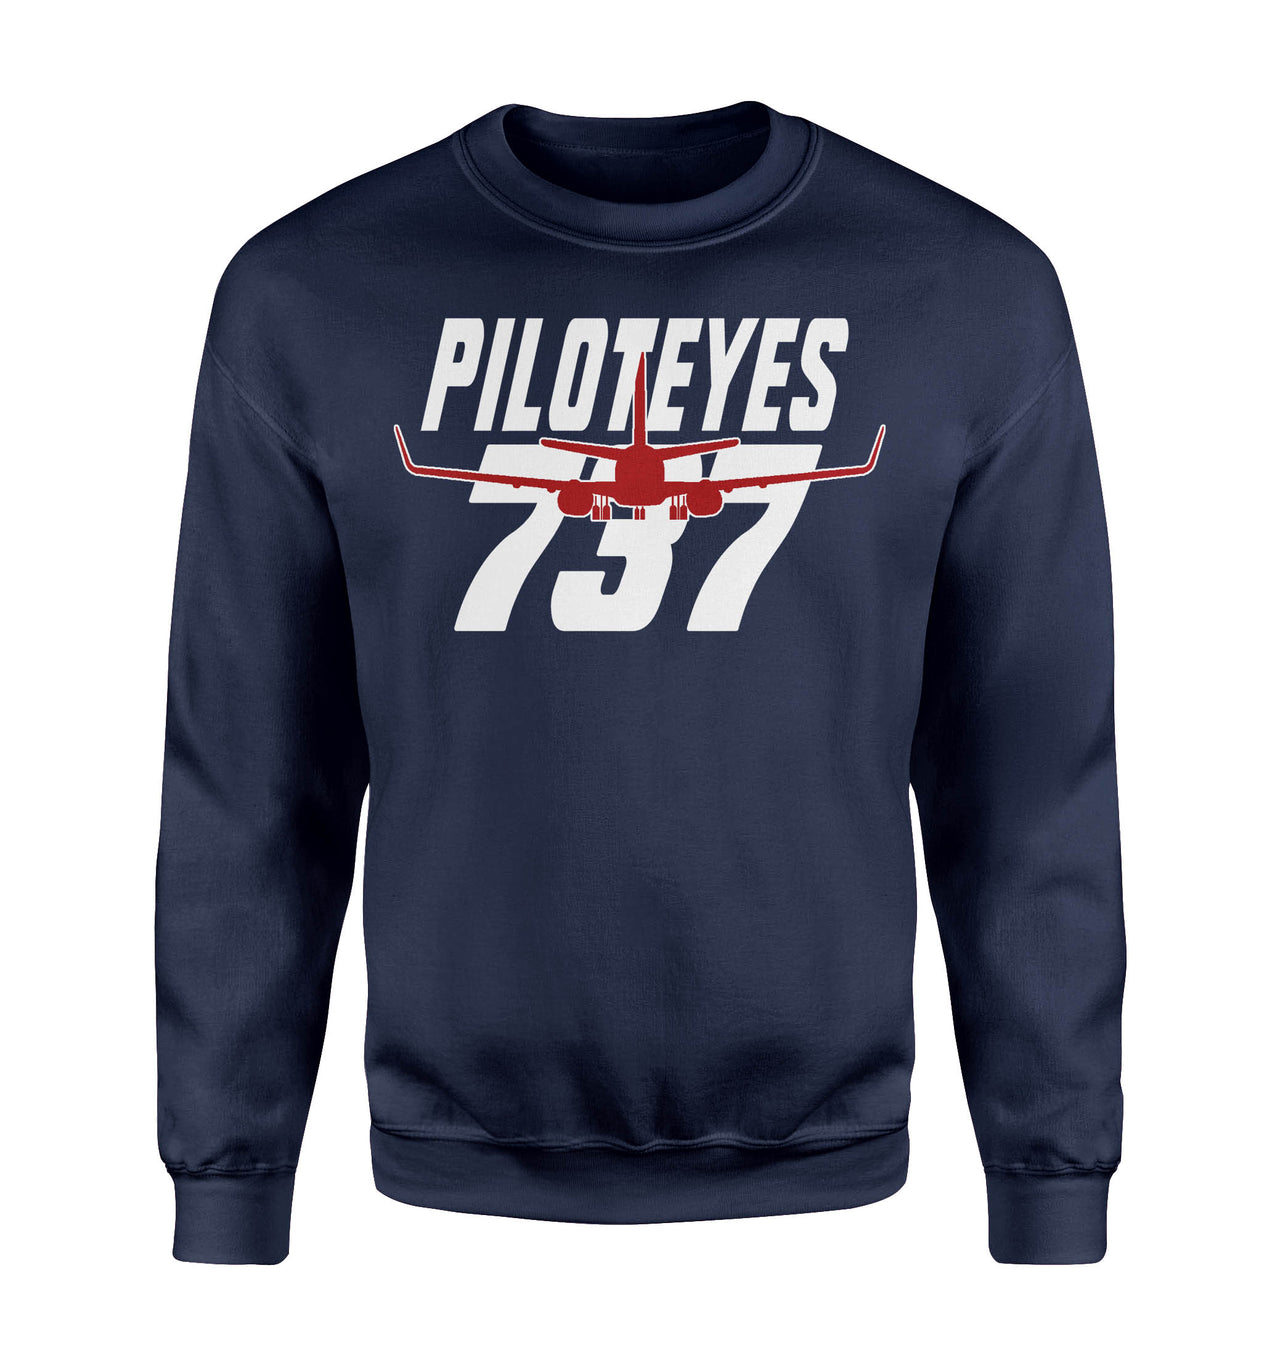 Amazing Piloteyes737 Designed Sweatshirts